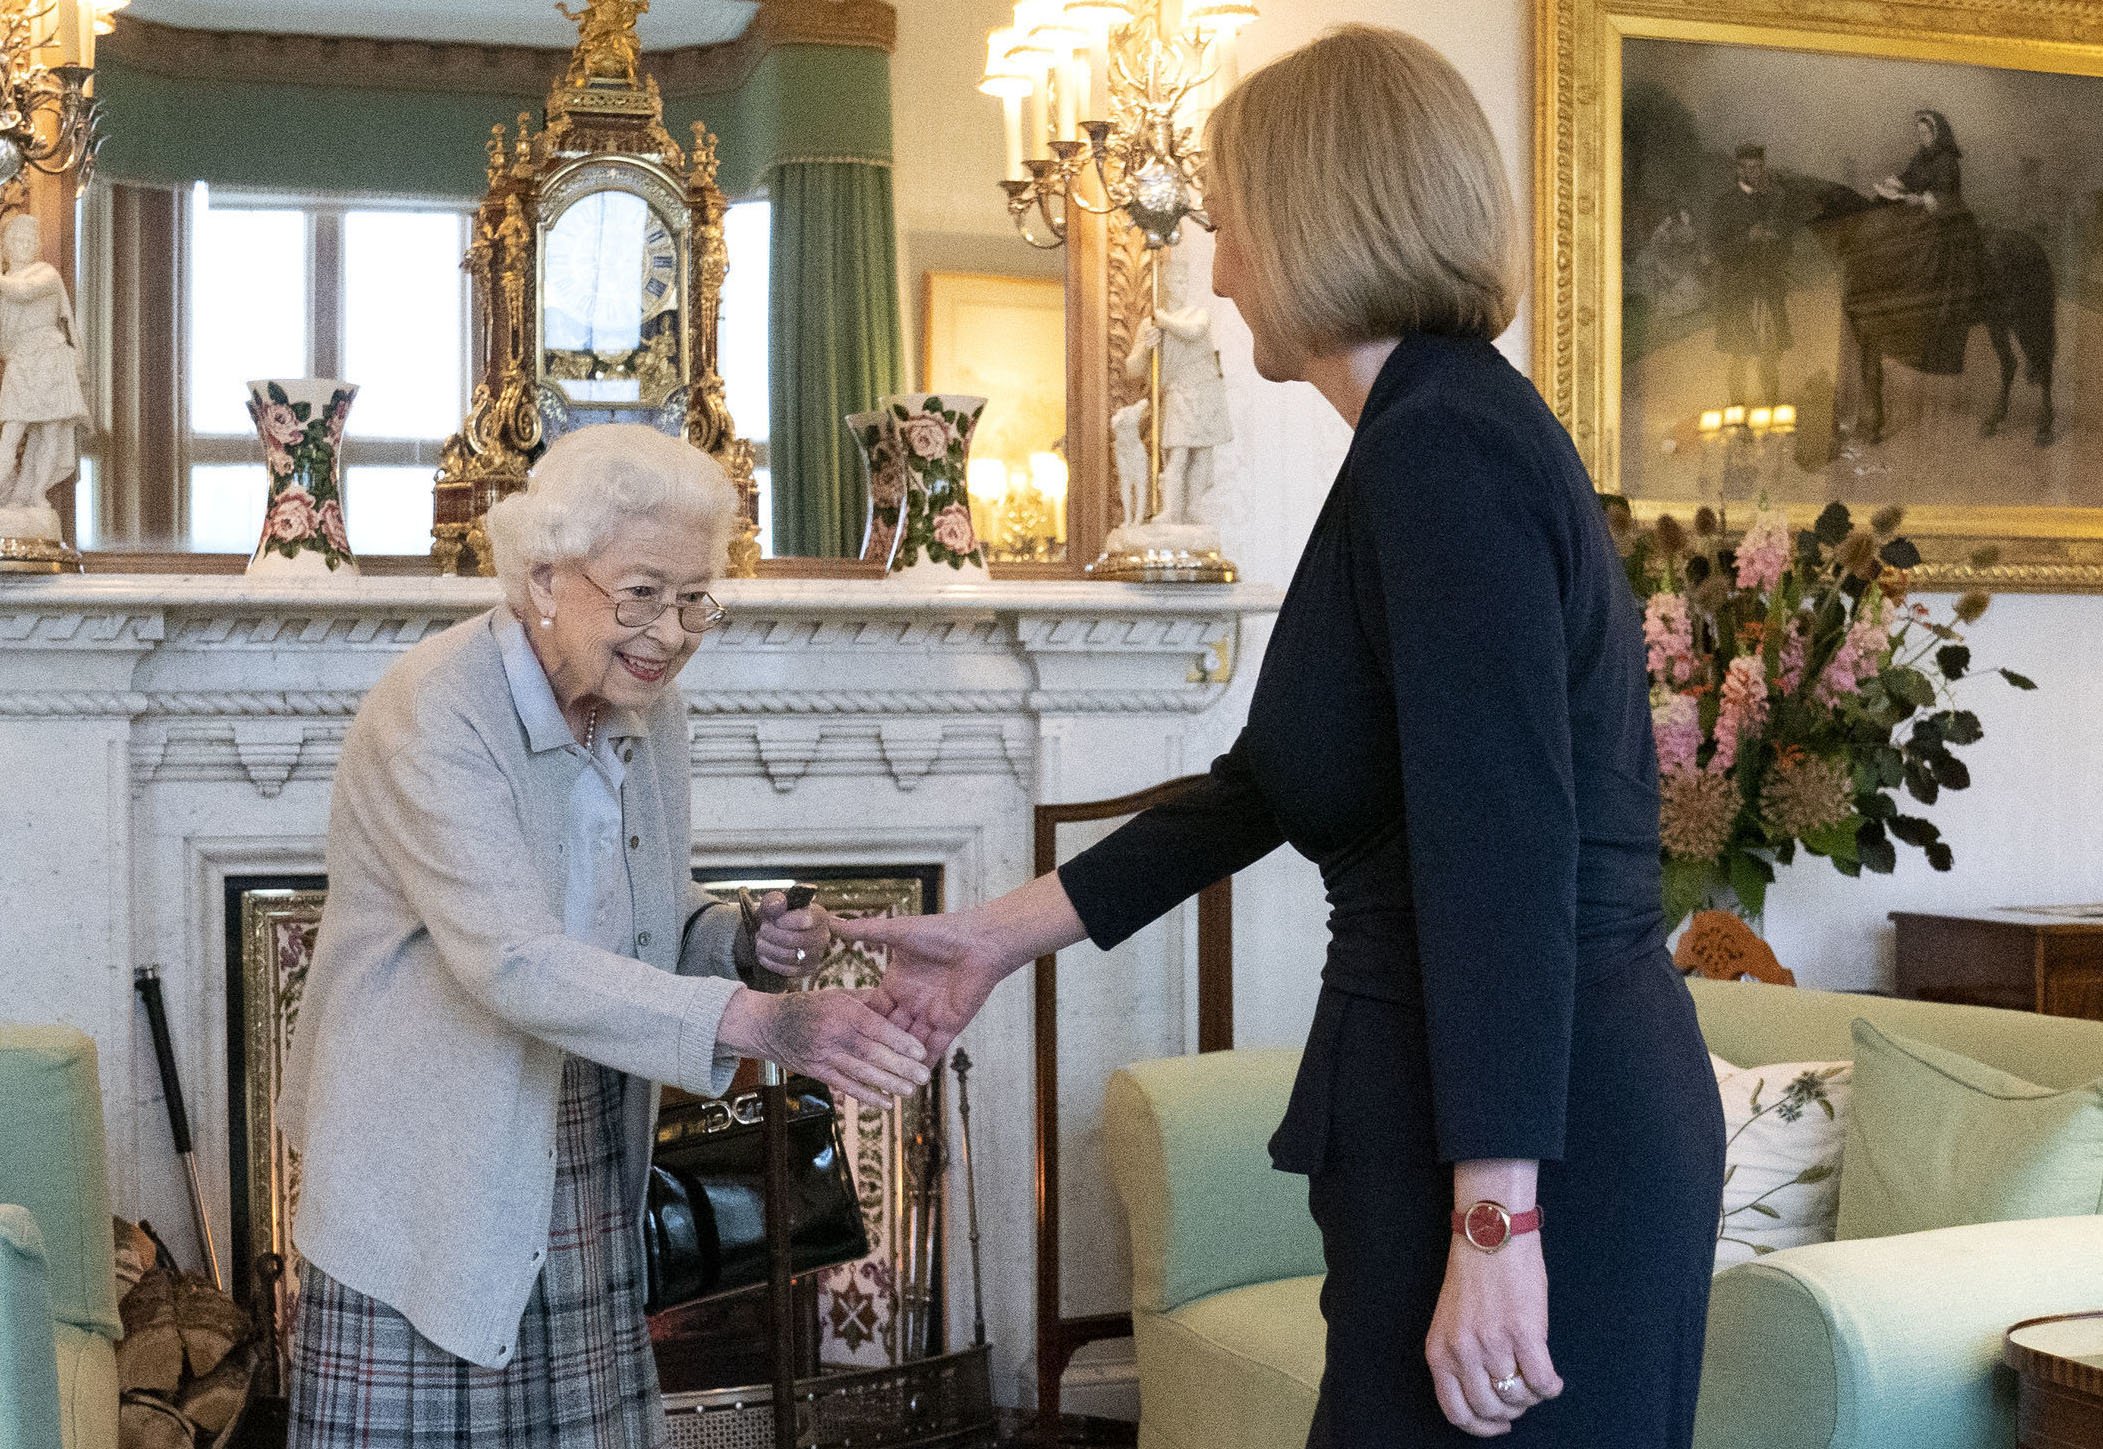 La reina Elizabeth II saludando a la líder recién elegida del partido conservador Liz Truss en Balmoral, el 6 de septiembre de 2022 en Aberdeen, Escocia. | Foto: Getty Images